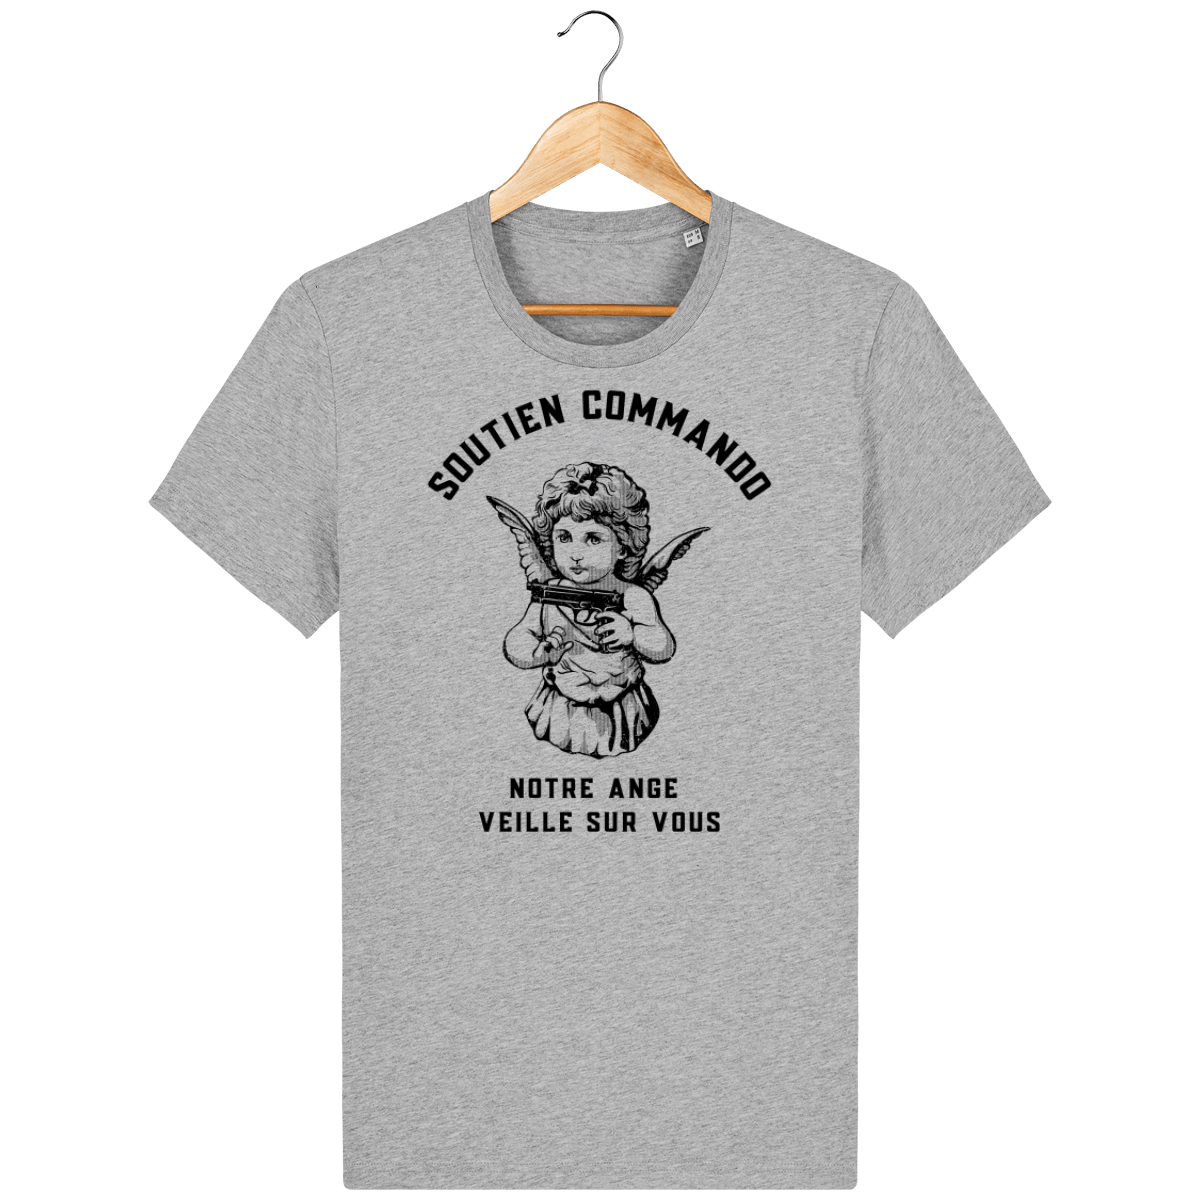 T-shirt L'Ange Gardien de Soutien commando